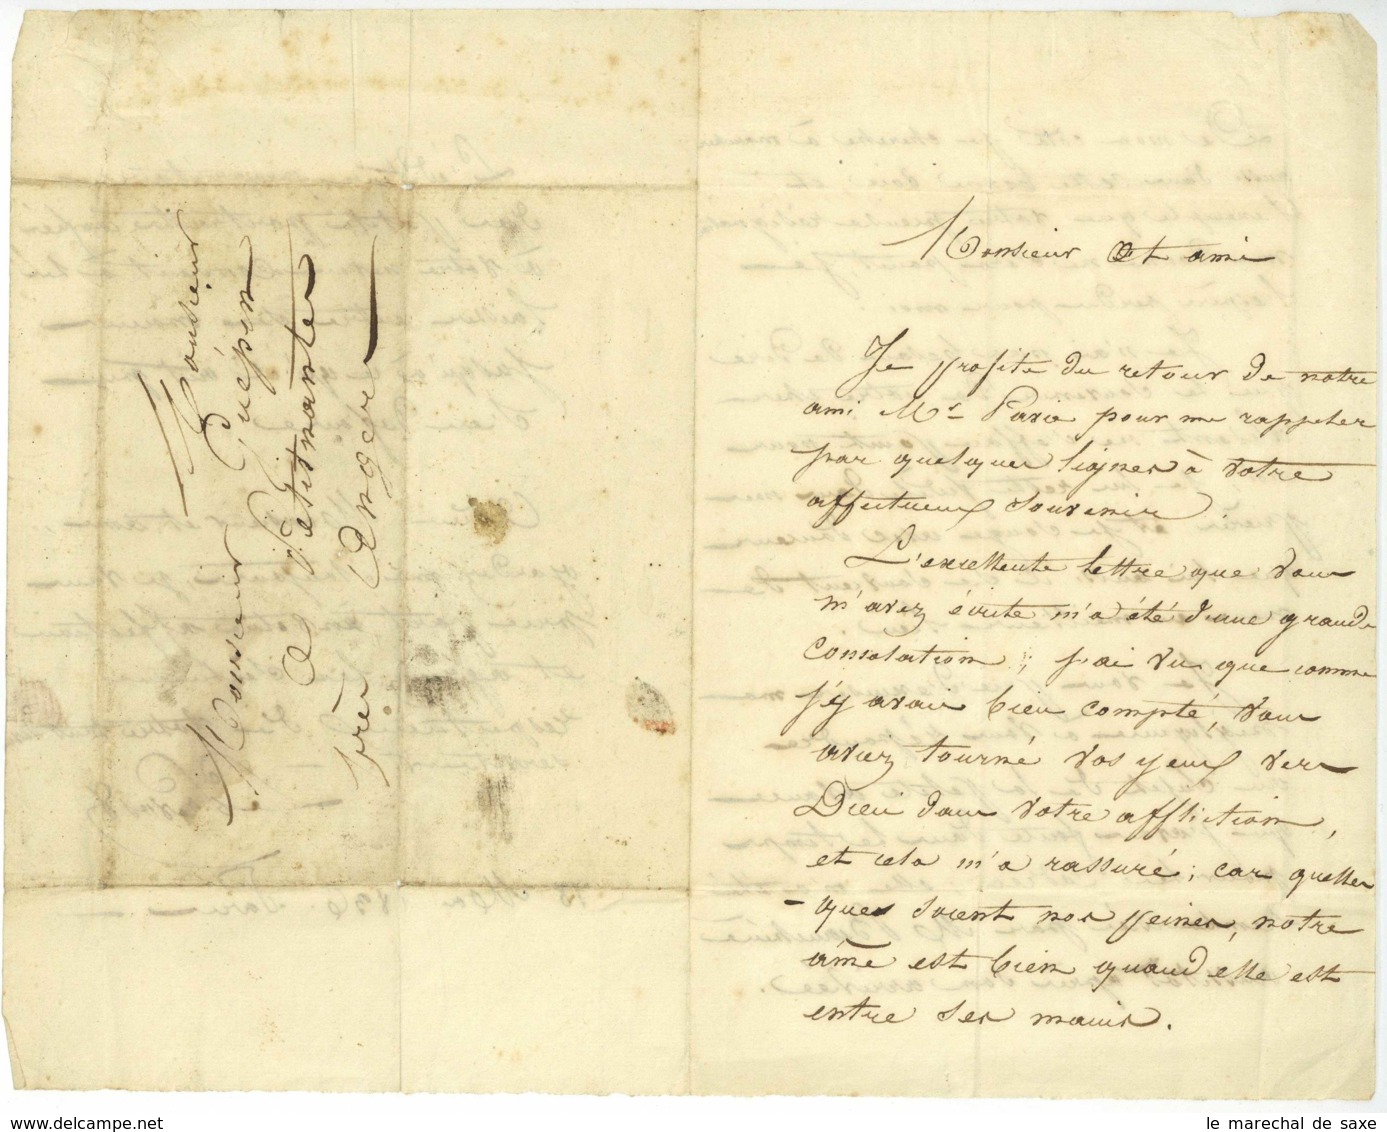 LE PREVOST LAS 1836 Paris Pour M GUEPIN A Petit Nantes Pres ANGERS - Manuscripts